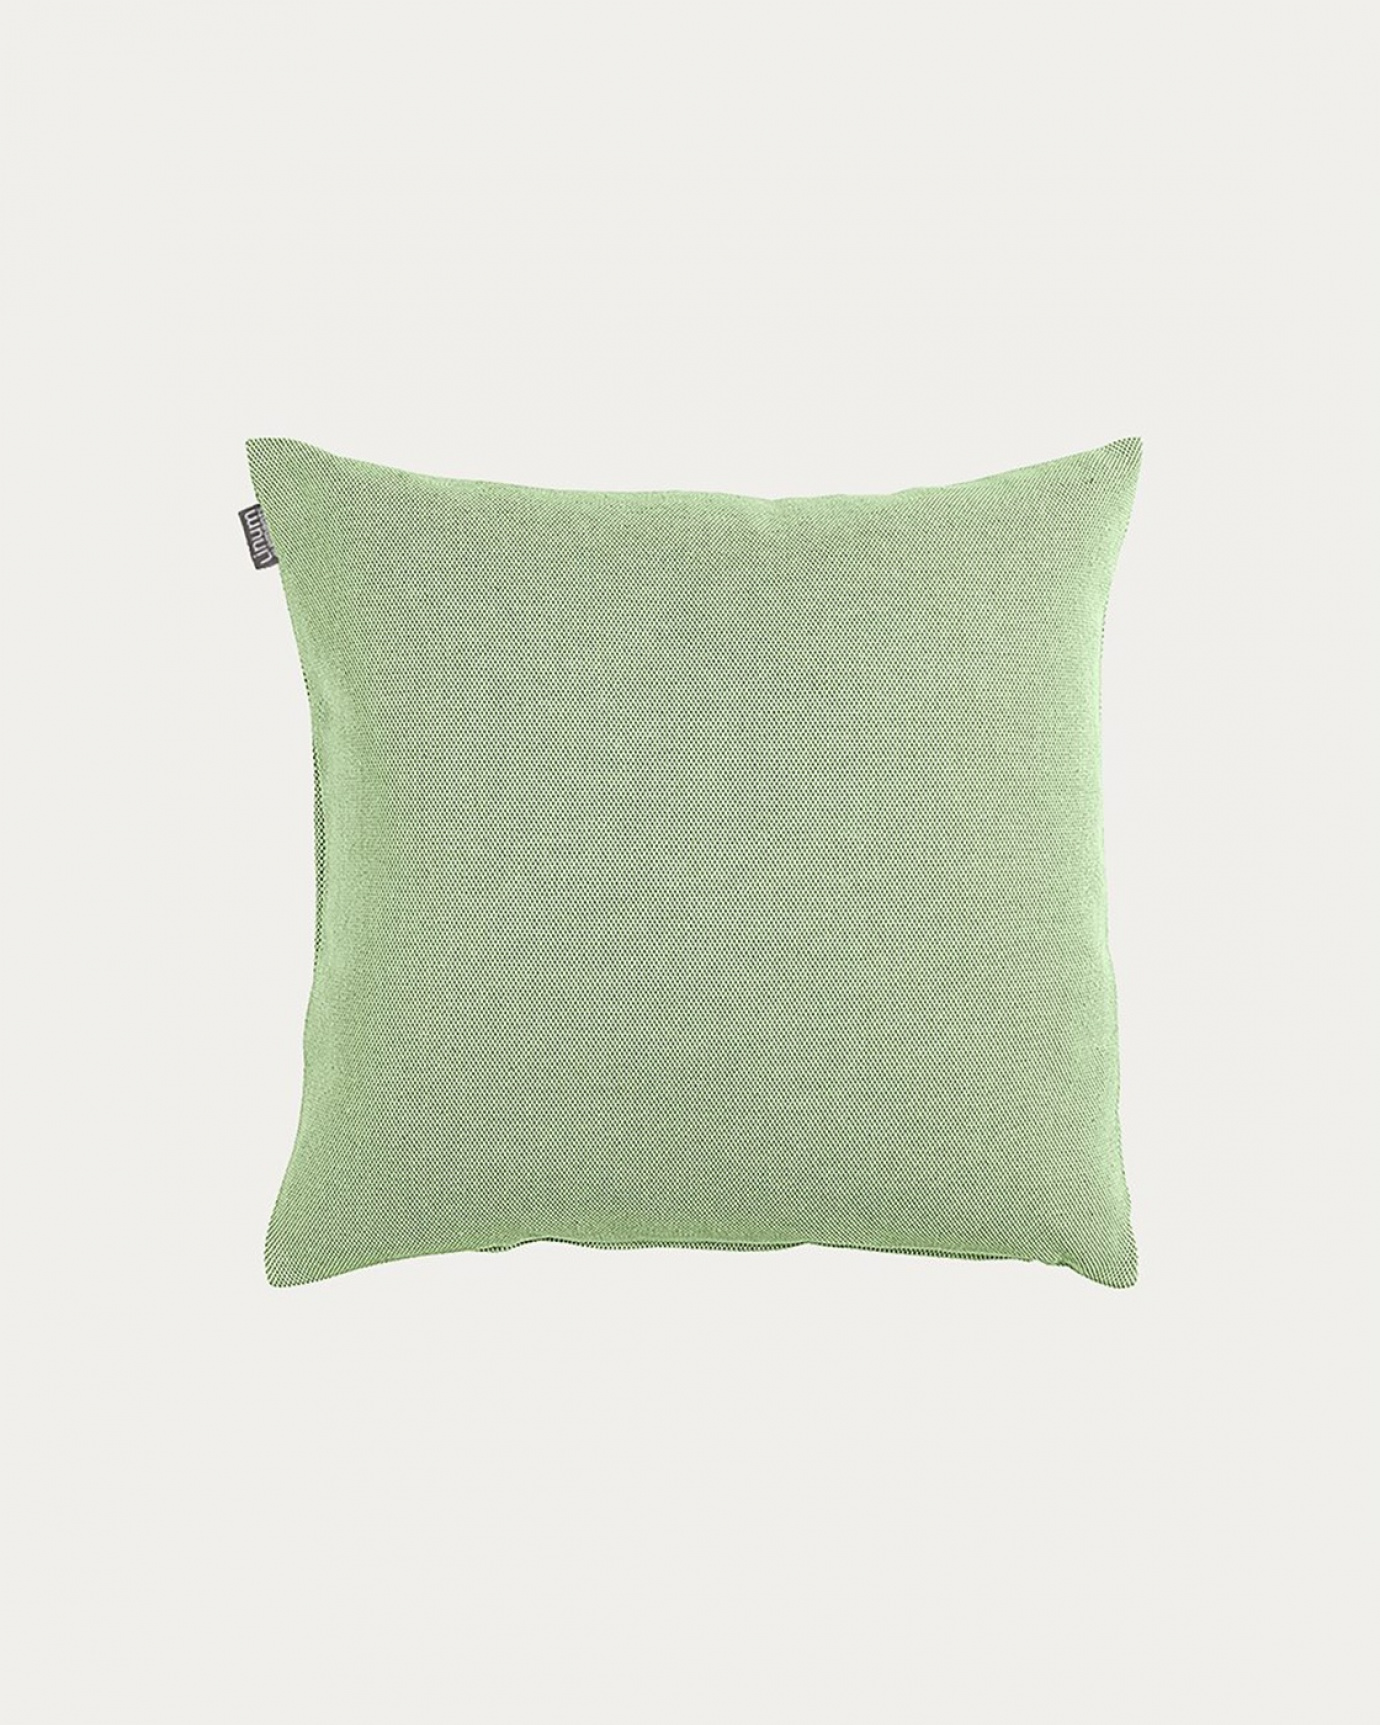 Image du produit housse de coussin PEPPER vert tilleul foncé en coton doux de LINUM DESIGN. Facile à laver et durable pendant des générations. Taille 40 x 40 cm.